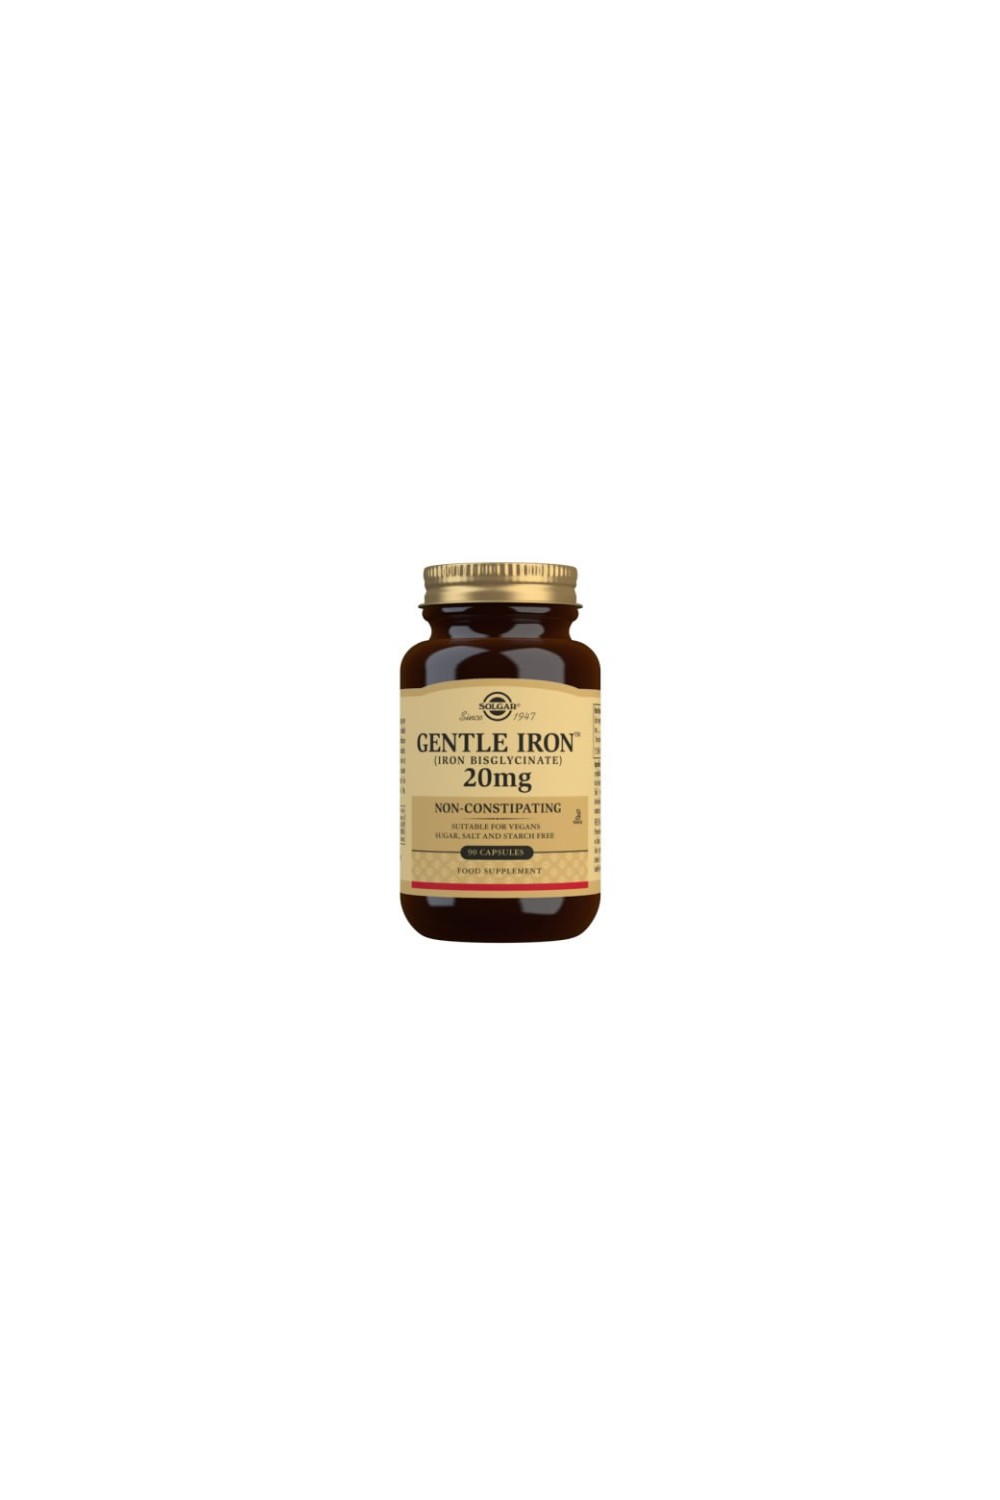 Solgar Gentle Iron (Iron Bisglycinate) 20 mg Vegetable Capsules - Pack of 90